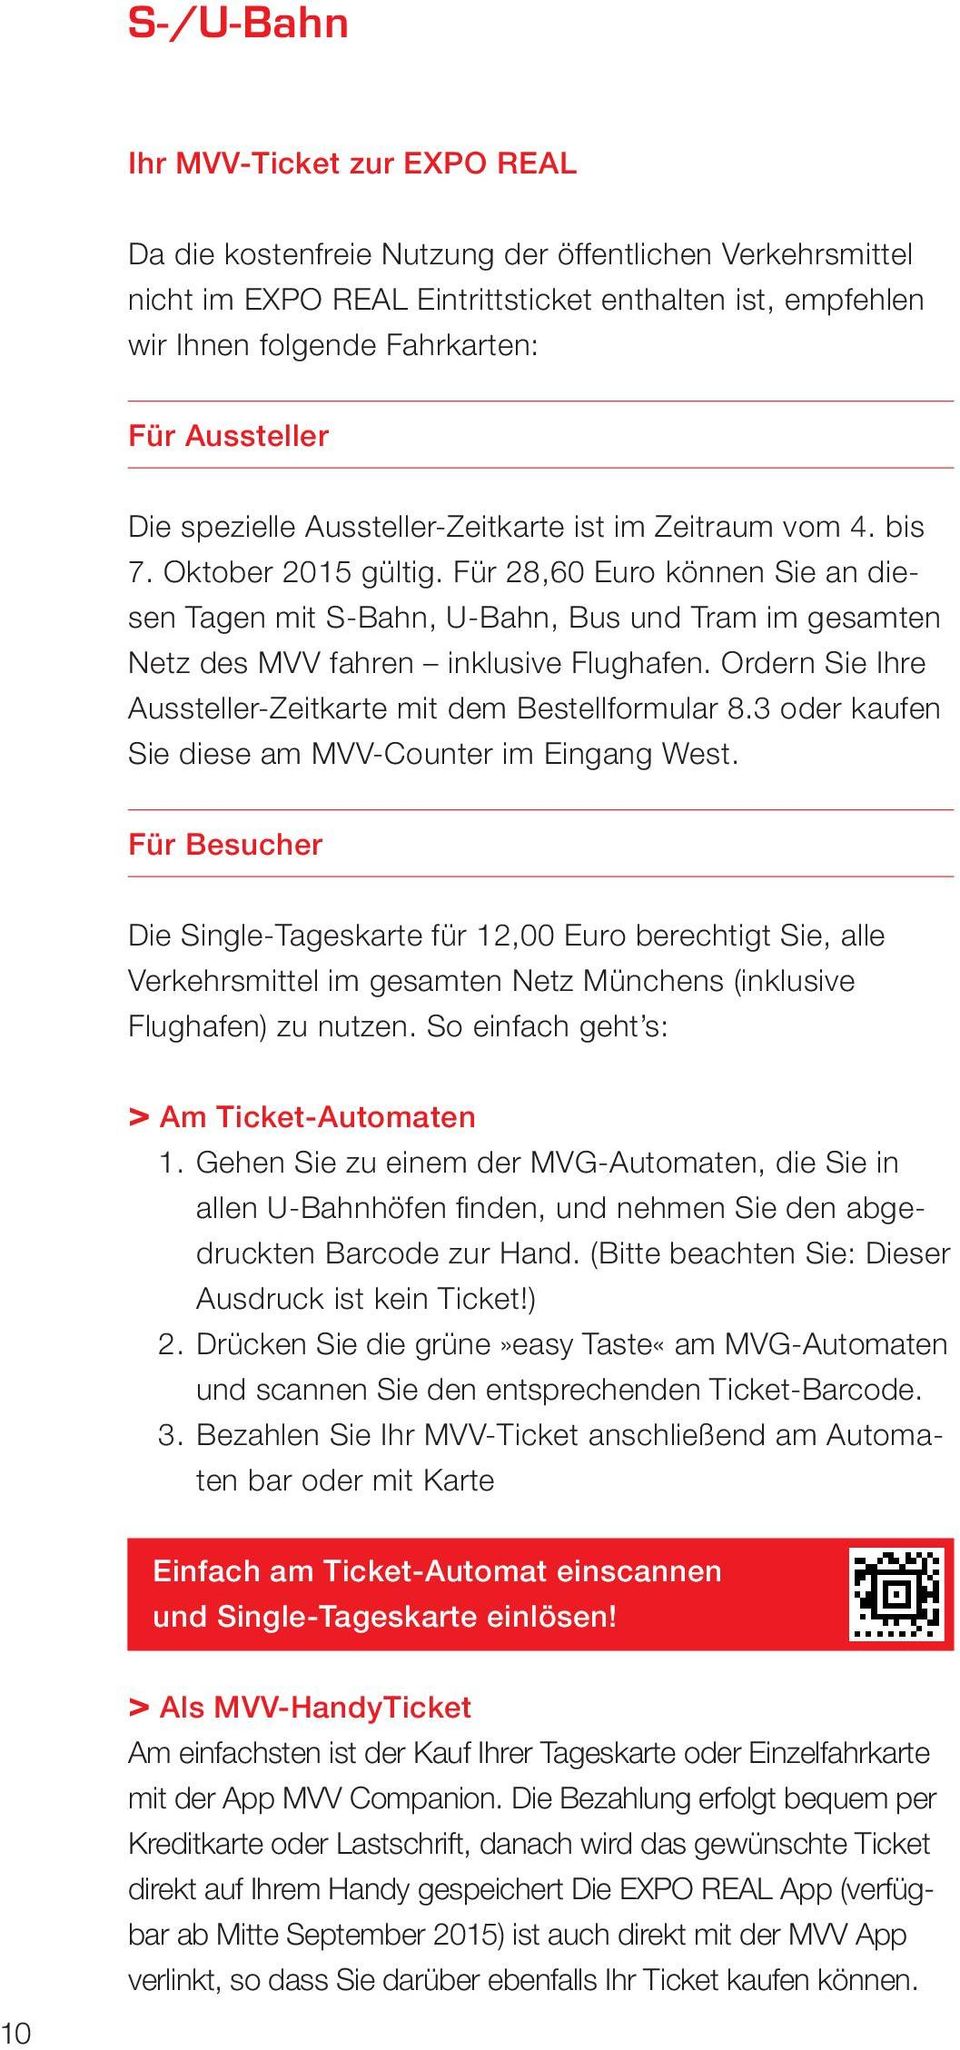 vom 4. bis Tickets 7. Oktober 2015 gültig. Für 28,60 Euro können Sie an diesen Tagen mit S-Bahn, U-Bahn, Bus und Tram im gesamten tvariante und Netz scannen des MVV fahren inklusive Flughafen.